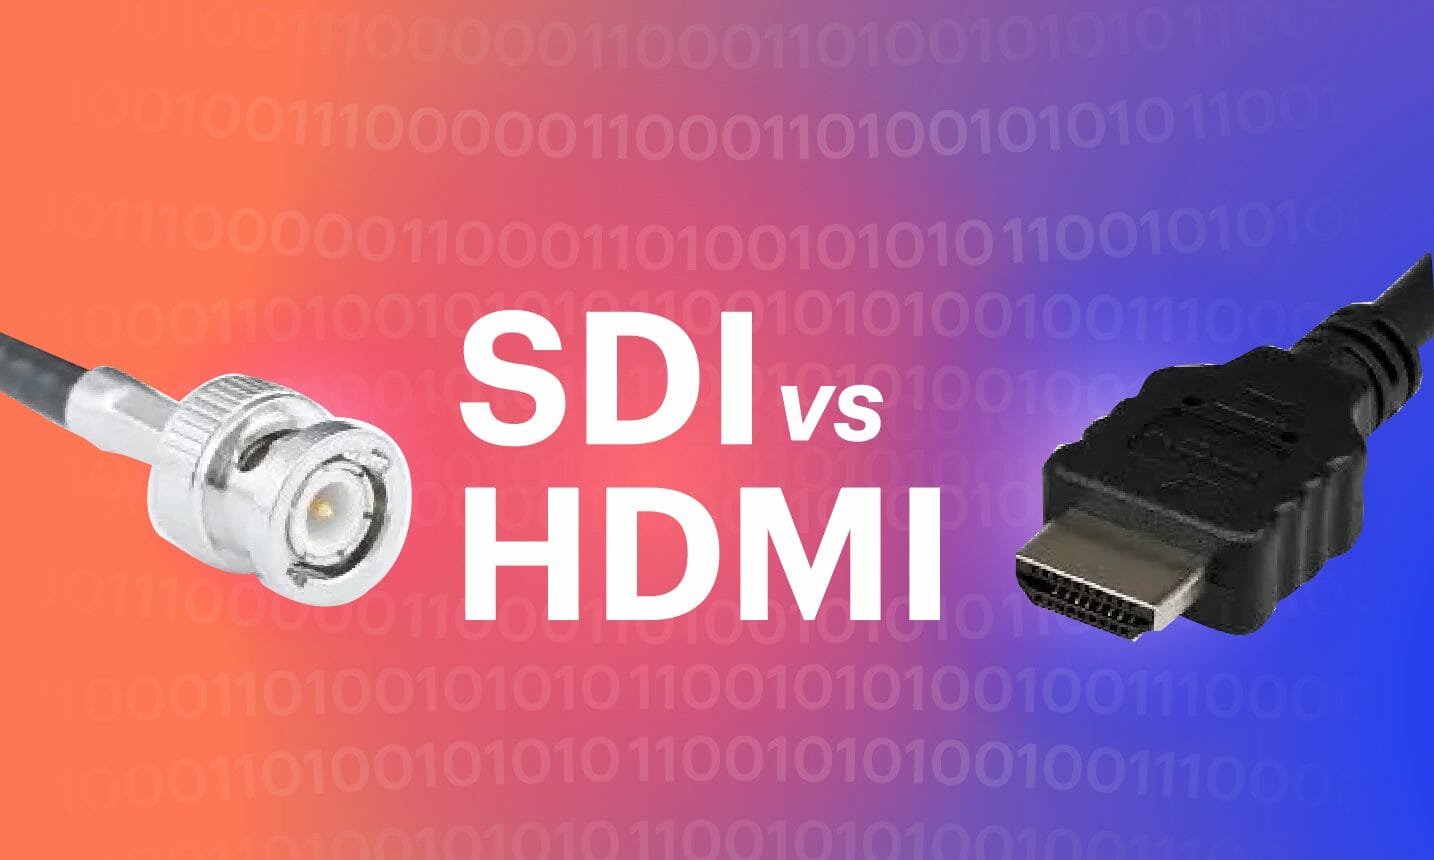 SDI vs HDMI